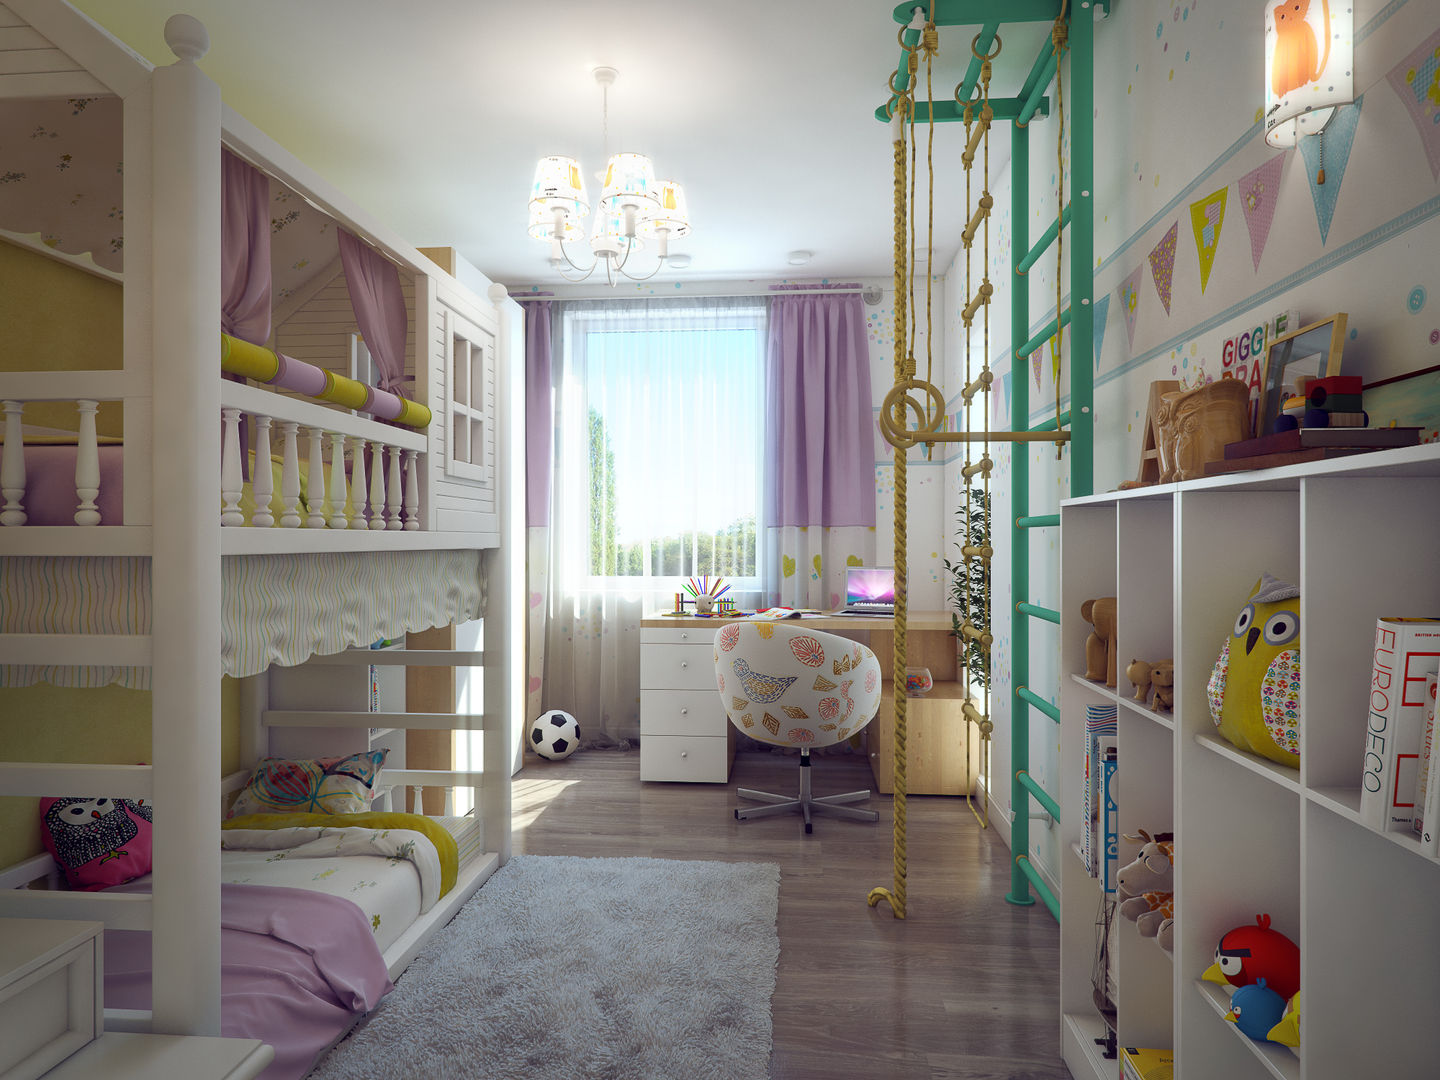 Дизайн-проект в ЖК Миргород, Details, design studio Details, design studio Eclectic style nursery/kids room